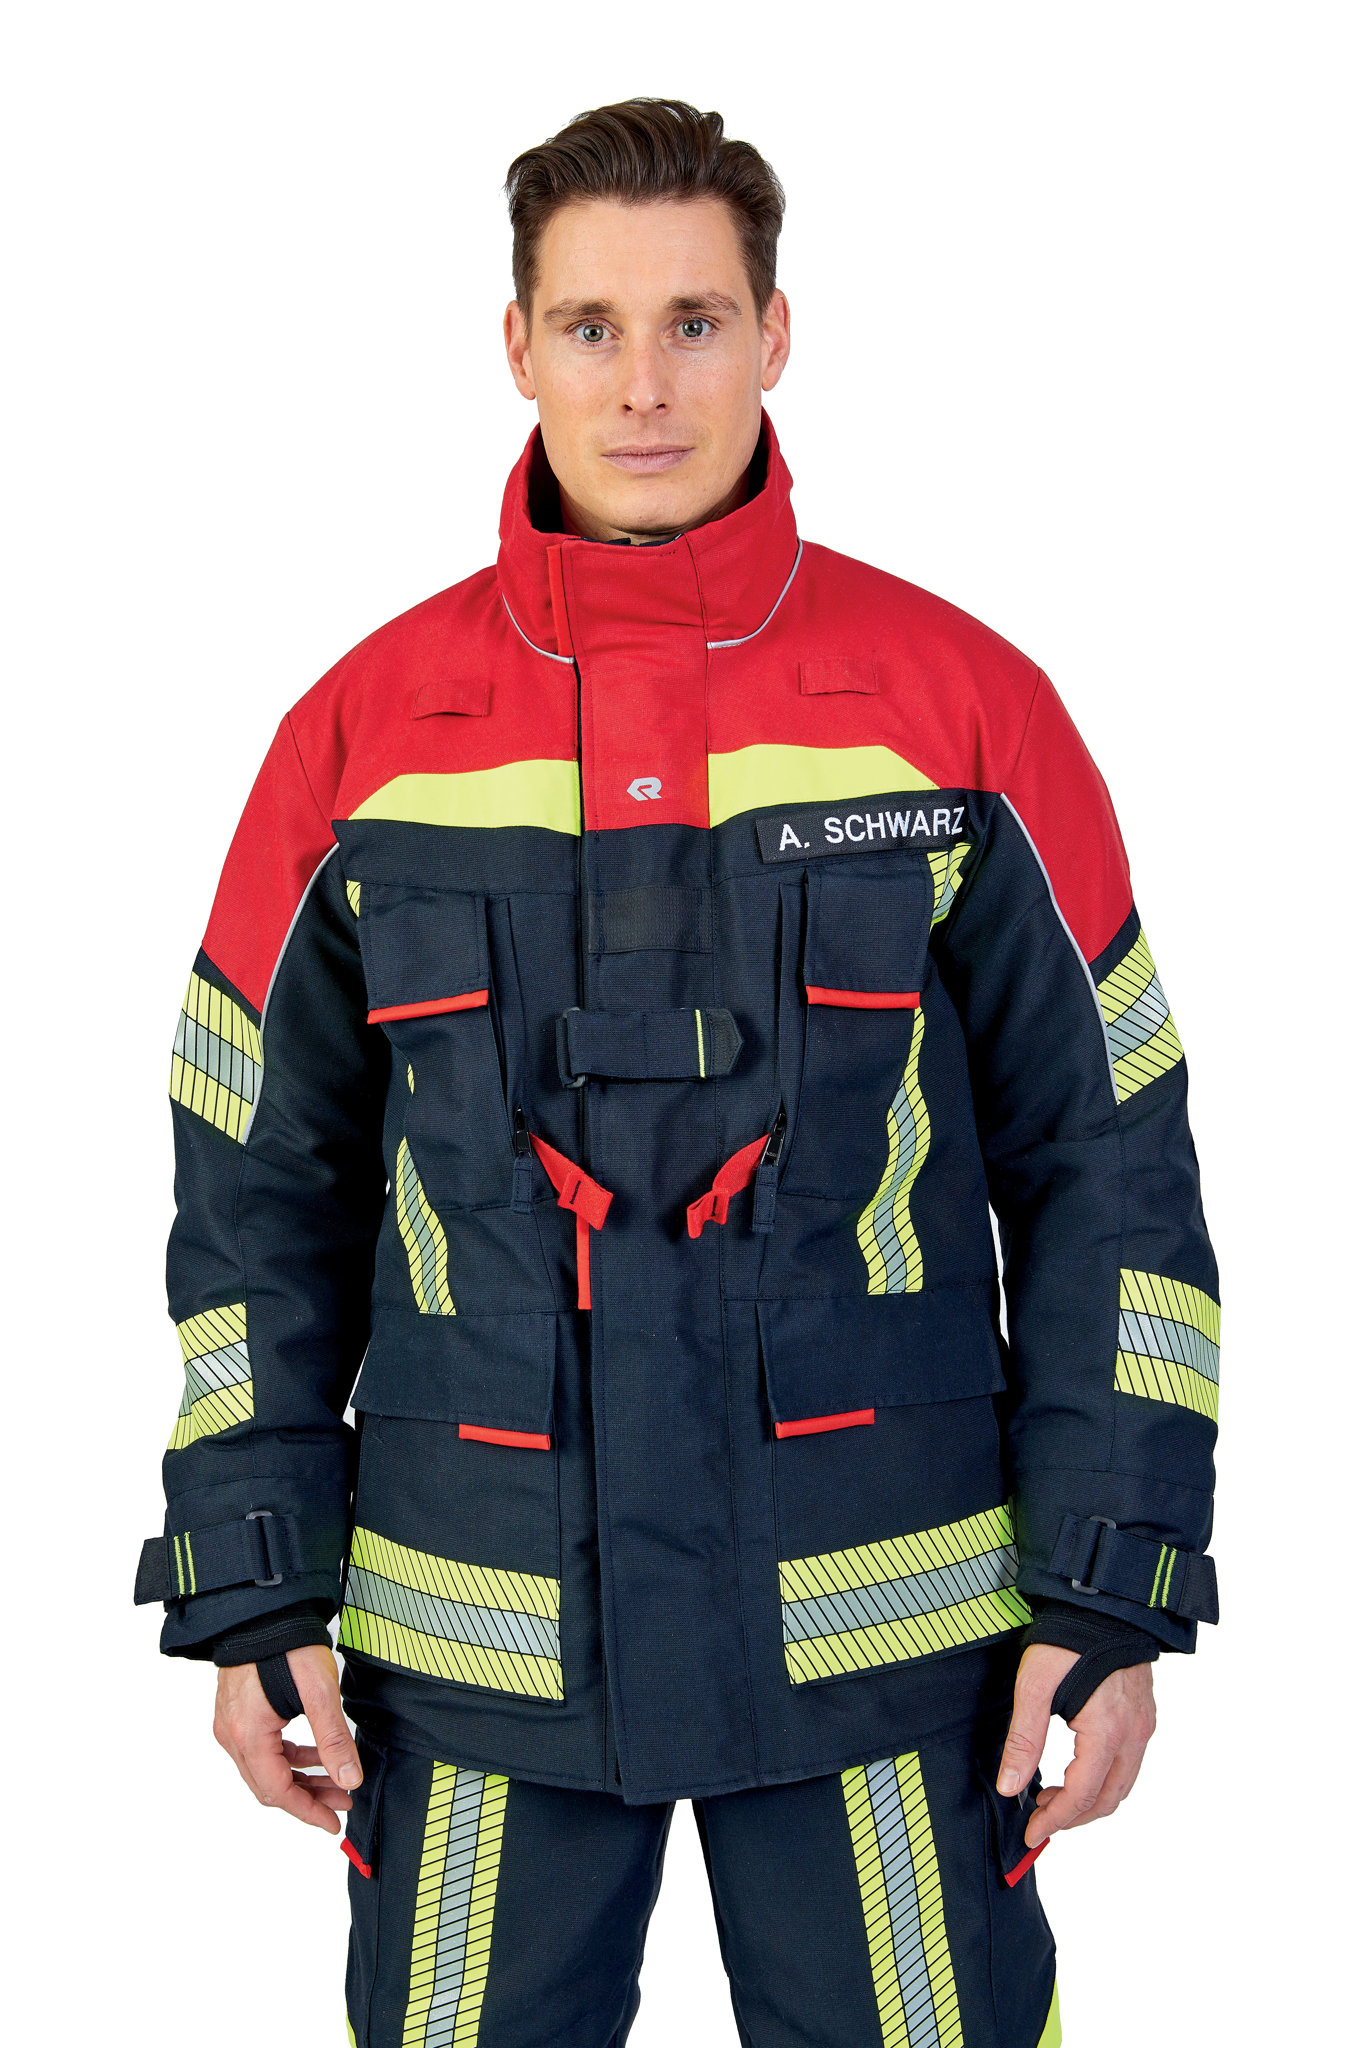 Bild von ROSENBAUER Feuerwehreinsatzjacke FIRE FLEX, NOMEX NXT, schwarzblau/rot, Gr. 64-66 A